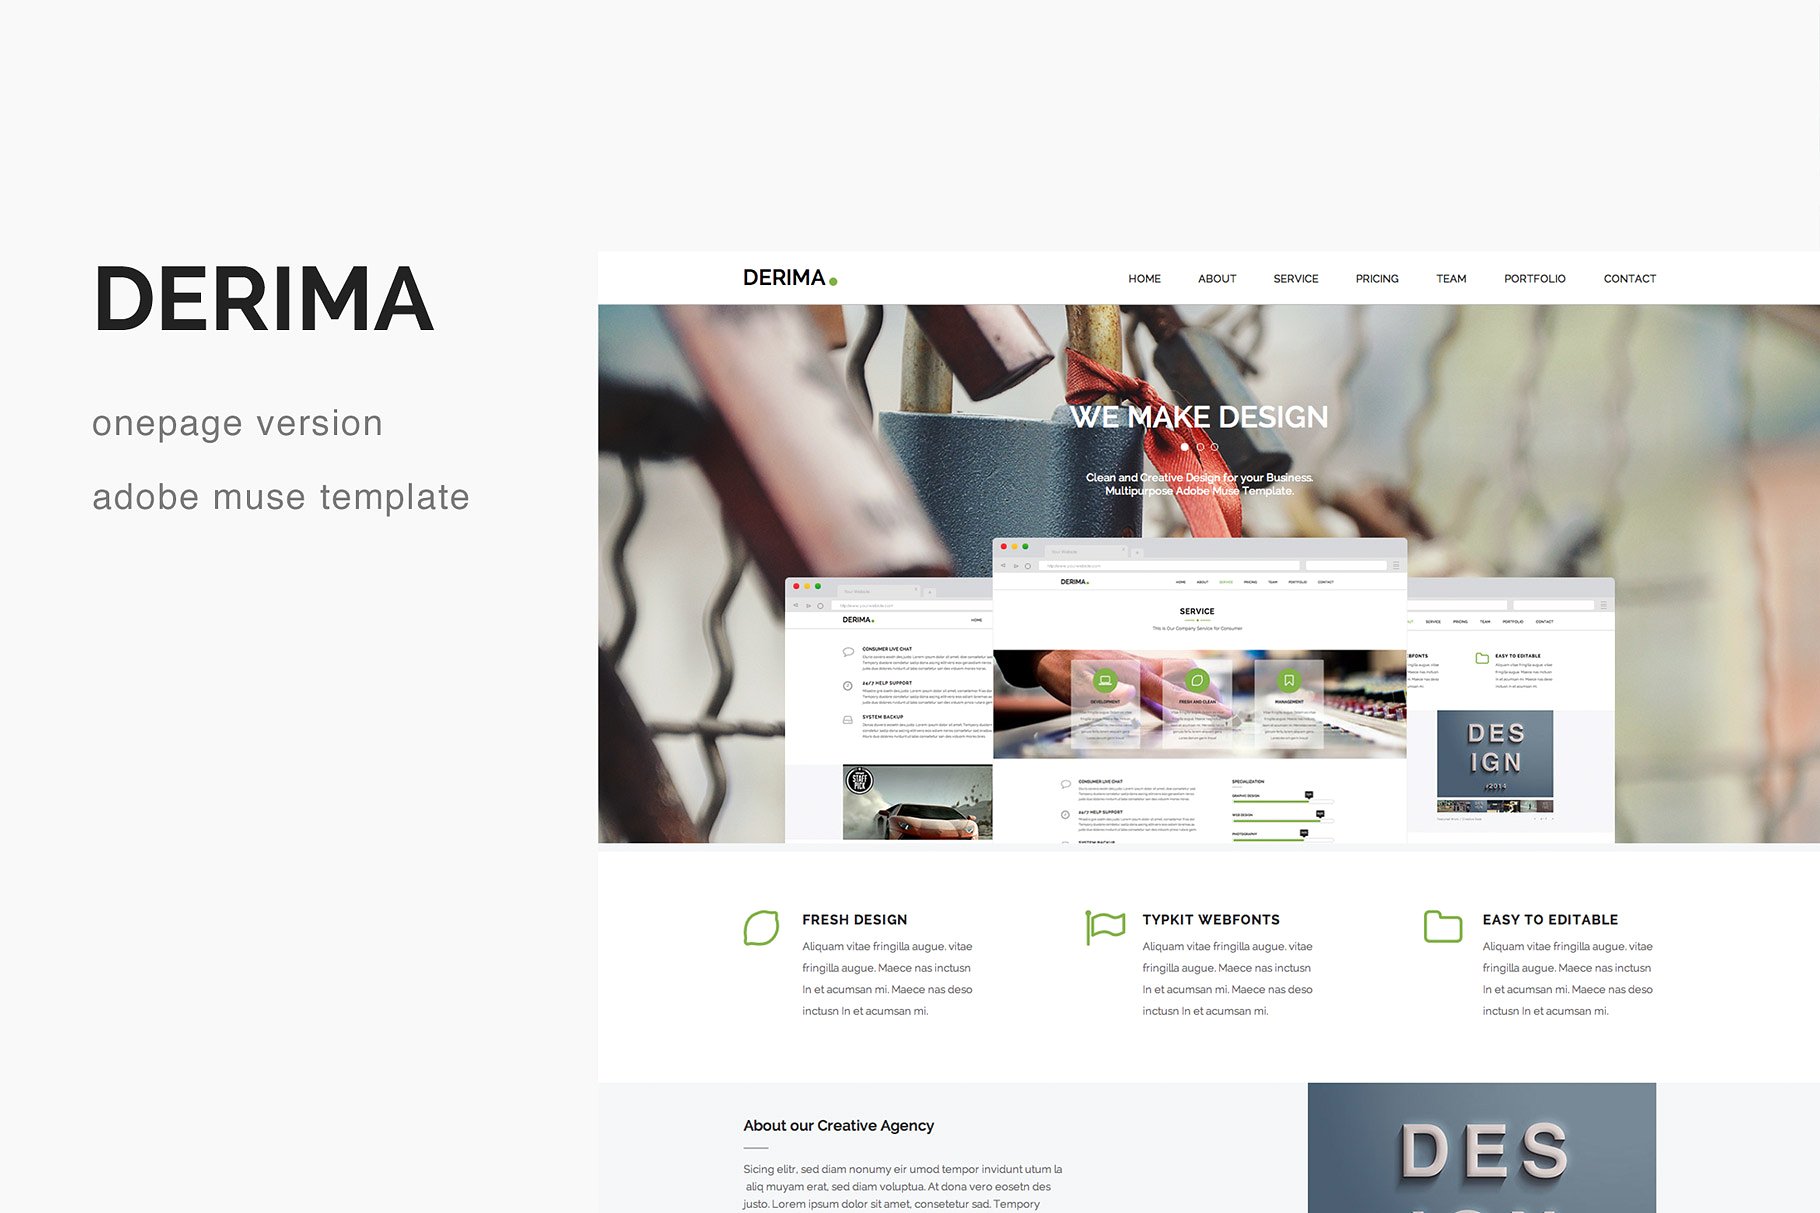 多用途视差创意单页网站设计Muse模板非凡图库精选 Derima – One Page Muse Template插图